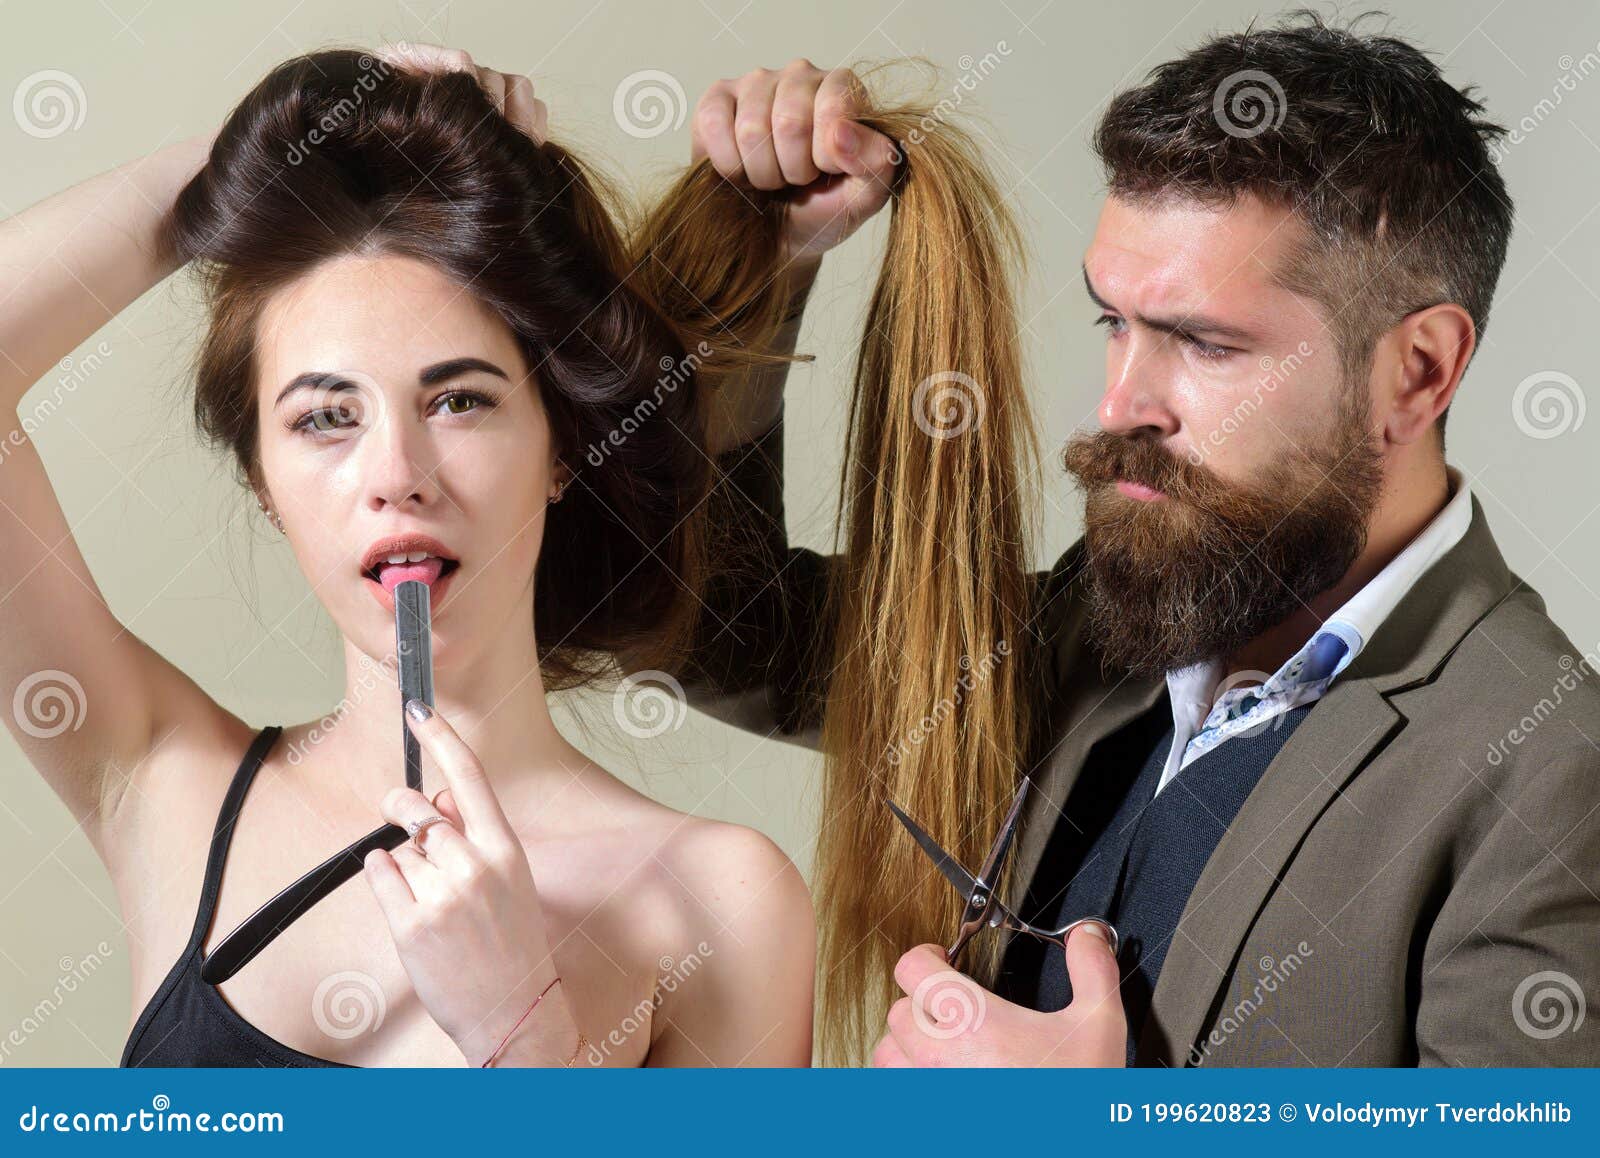 Mestre cabeleireiro faz penteado feminino com secador de cabelo e produtos  para o cabelo